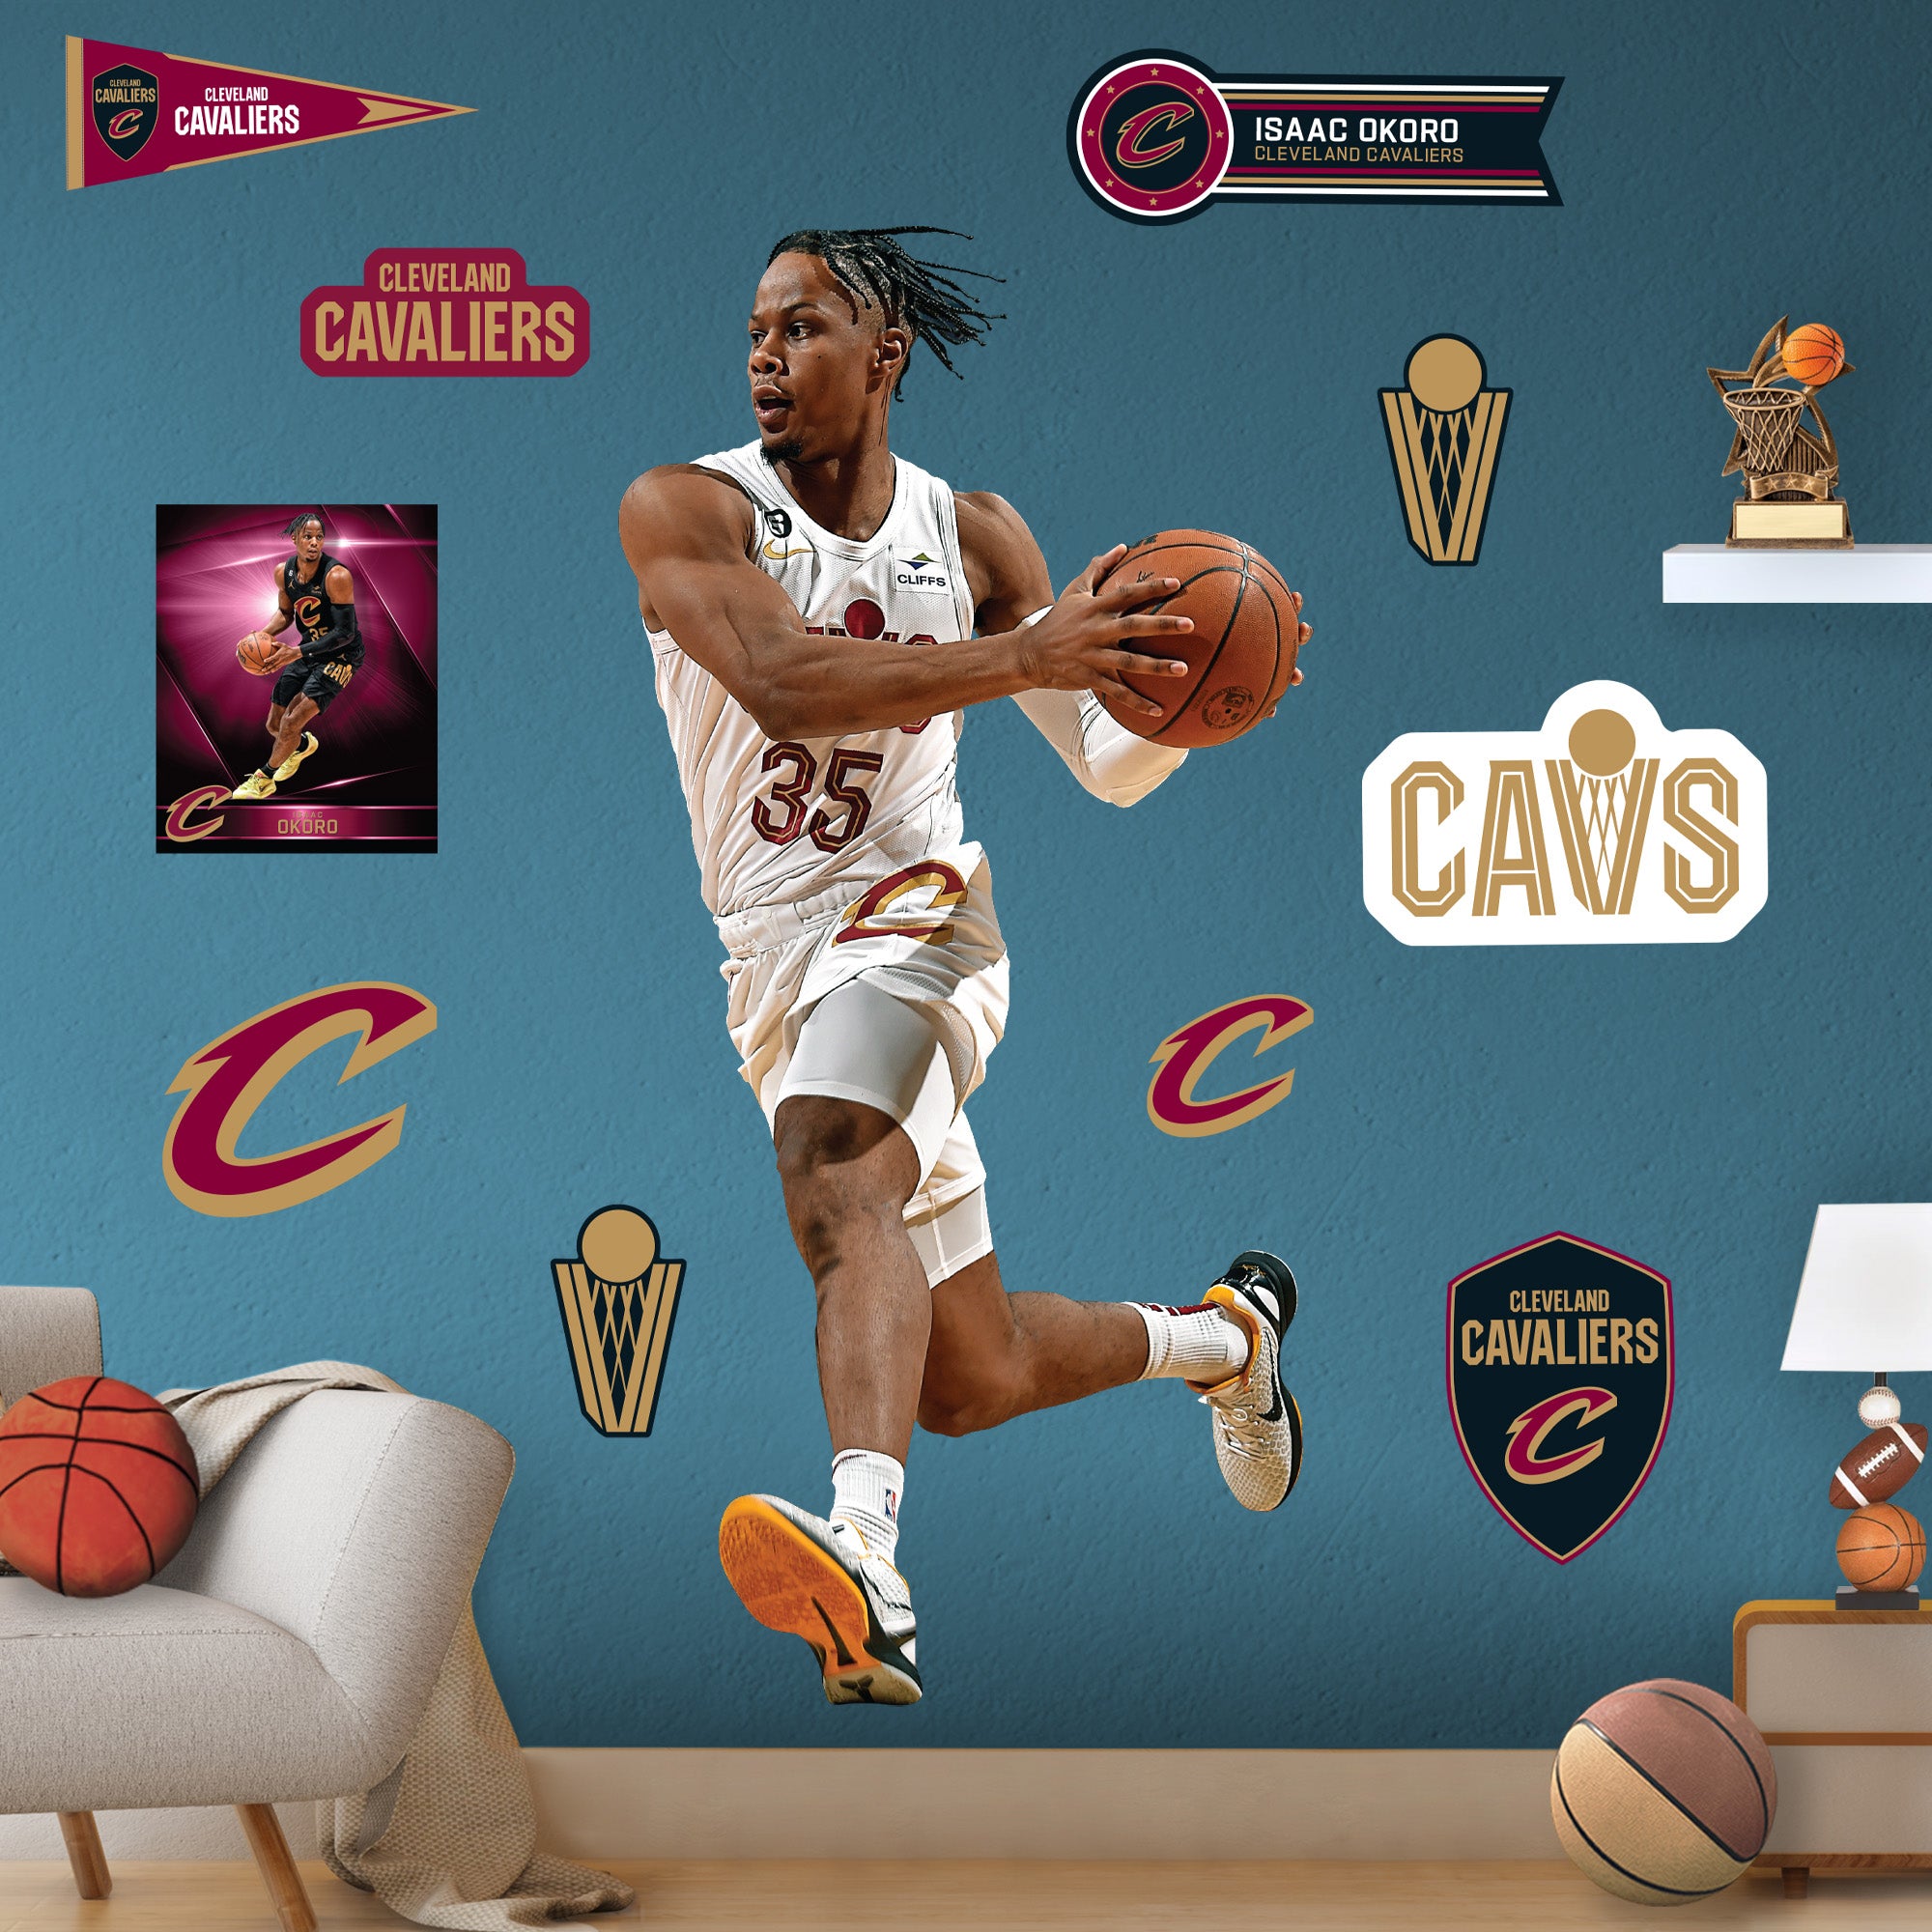 3 reasons Cavs will make and win 2022 NBA Finals